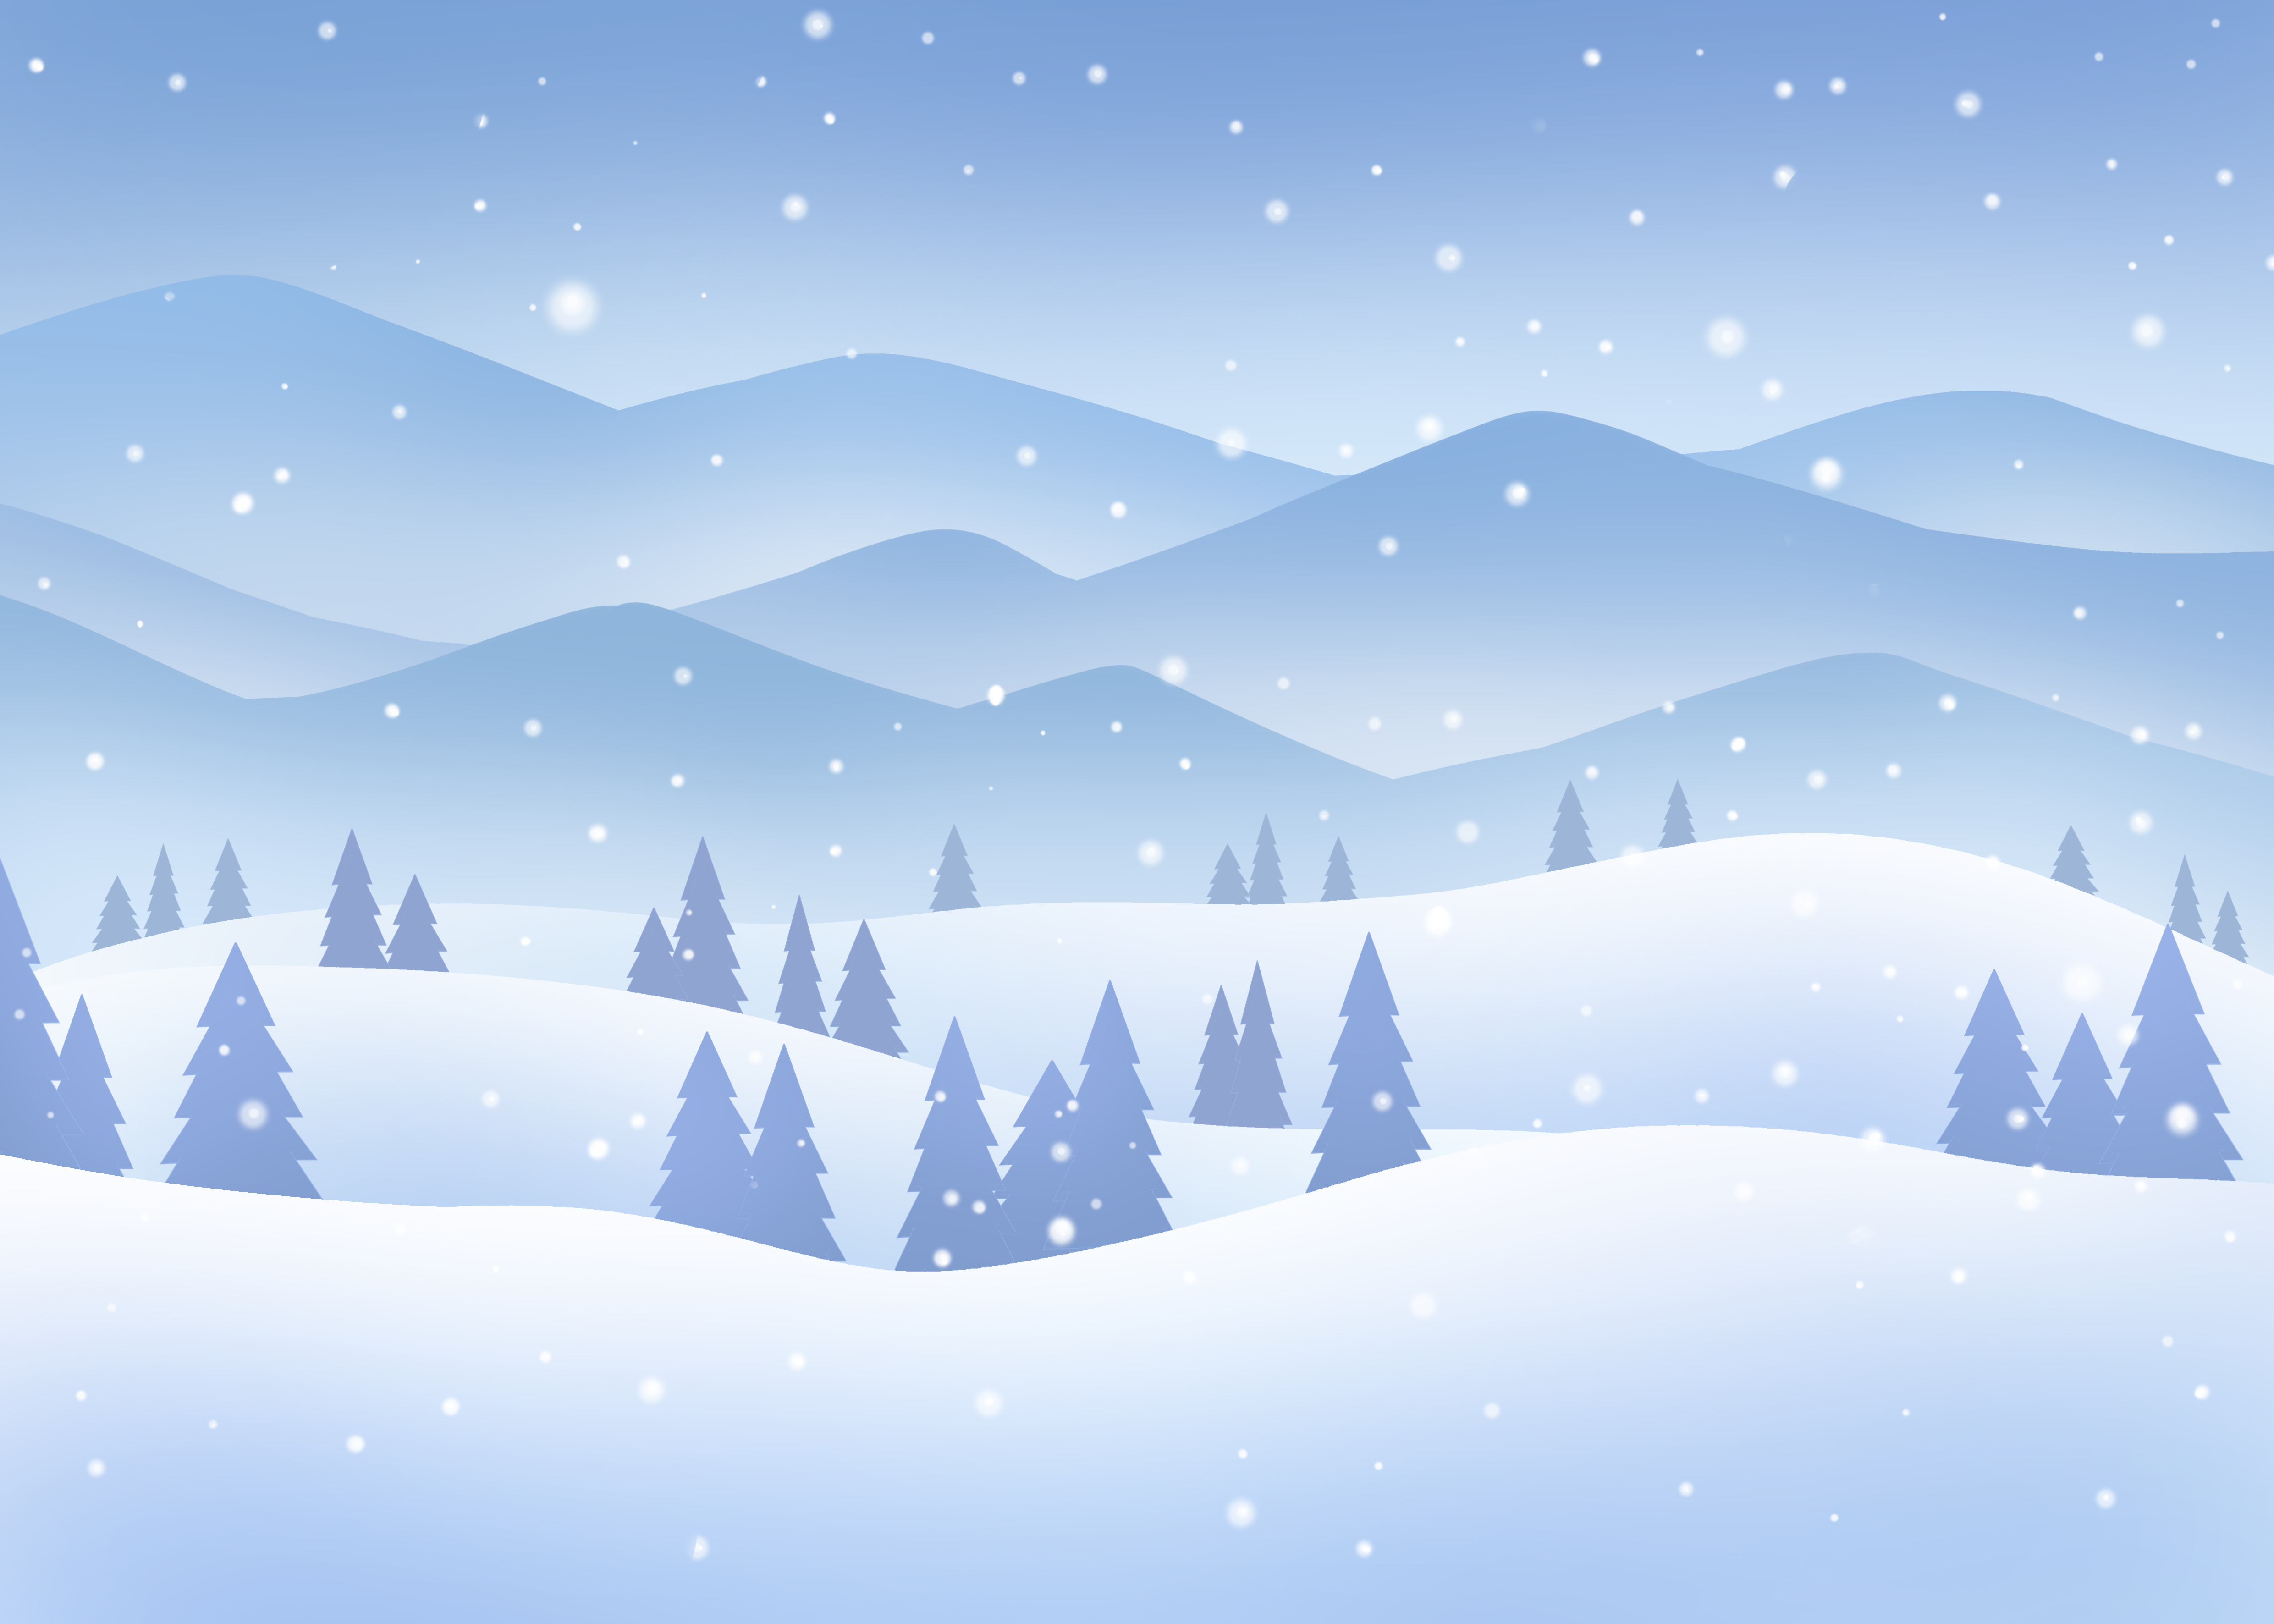 雪景雪山群山冬天下雪景色蓝色背景图片